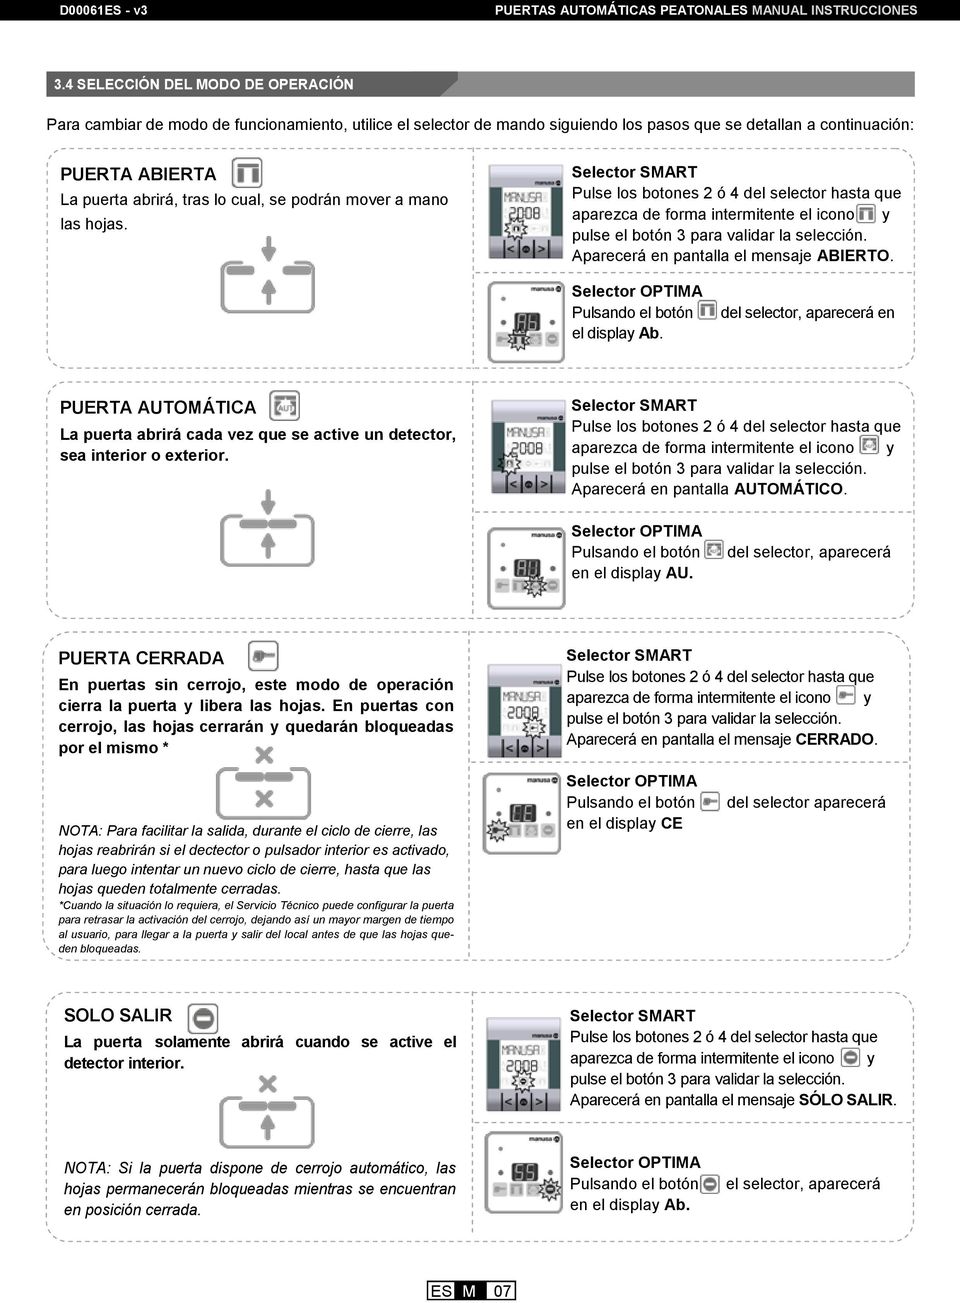 Manual De Instrucciones Puertas Automaticas Peatonales Correderas Pdf Free Download